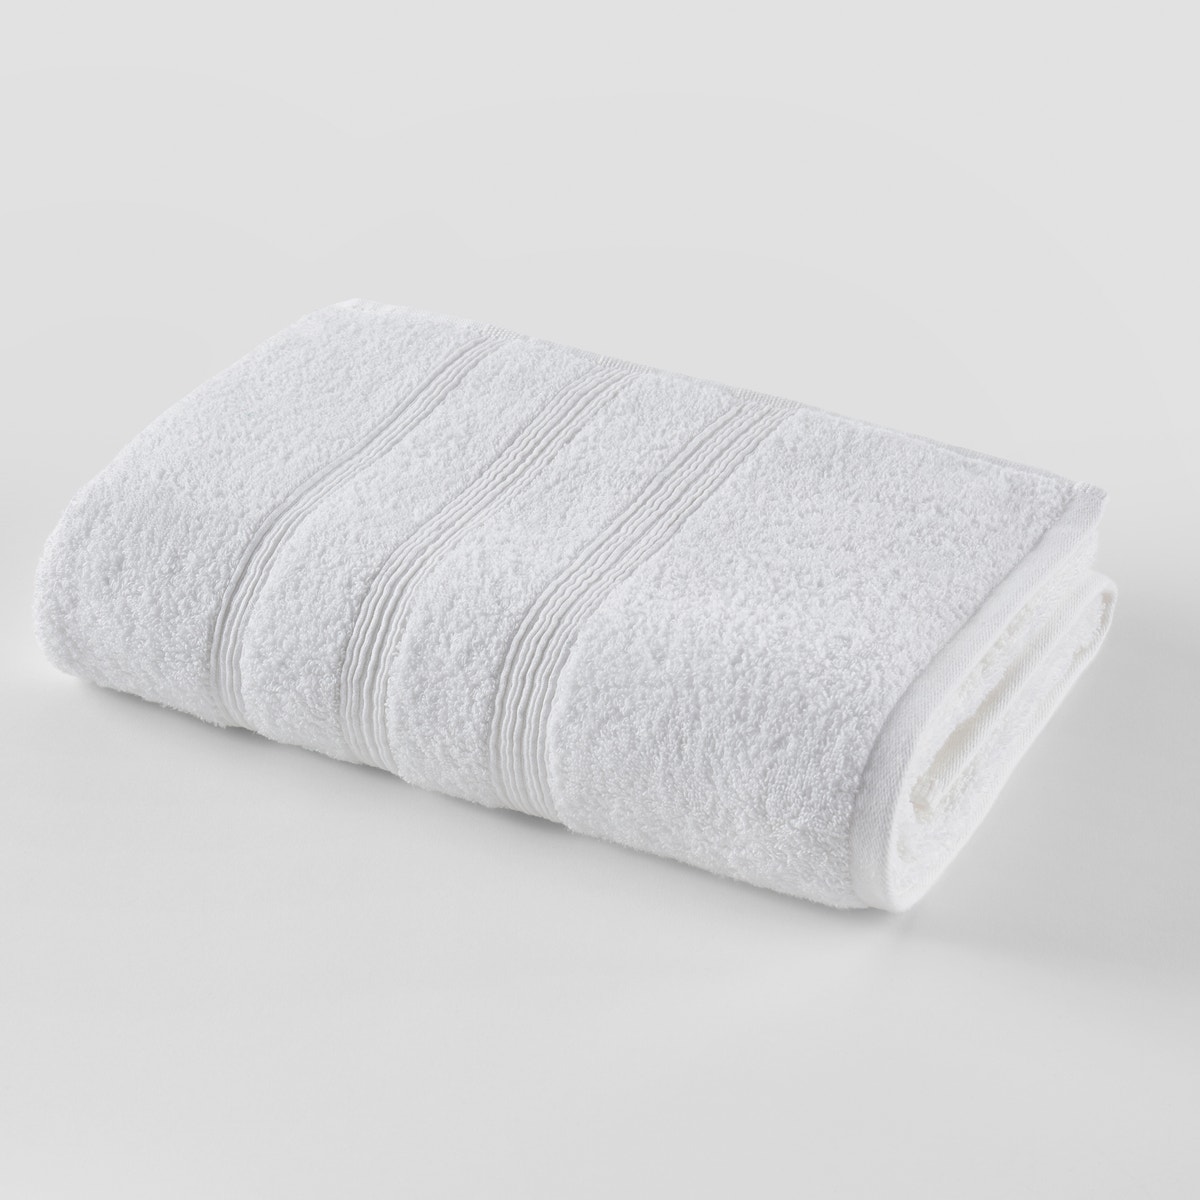 Σπίτι > Λευκά είδη > Μπάνιο > Πετσέτες μπάνιου Μονόχρωμη πετσέτα μπάνιου από οργανικό βαμβάκι 600 g/m² 70x140 cm